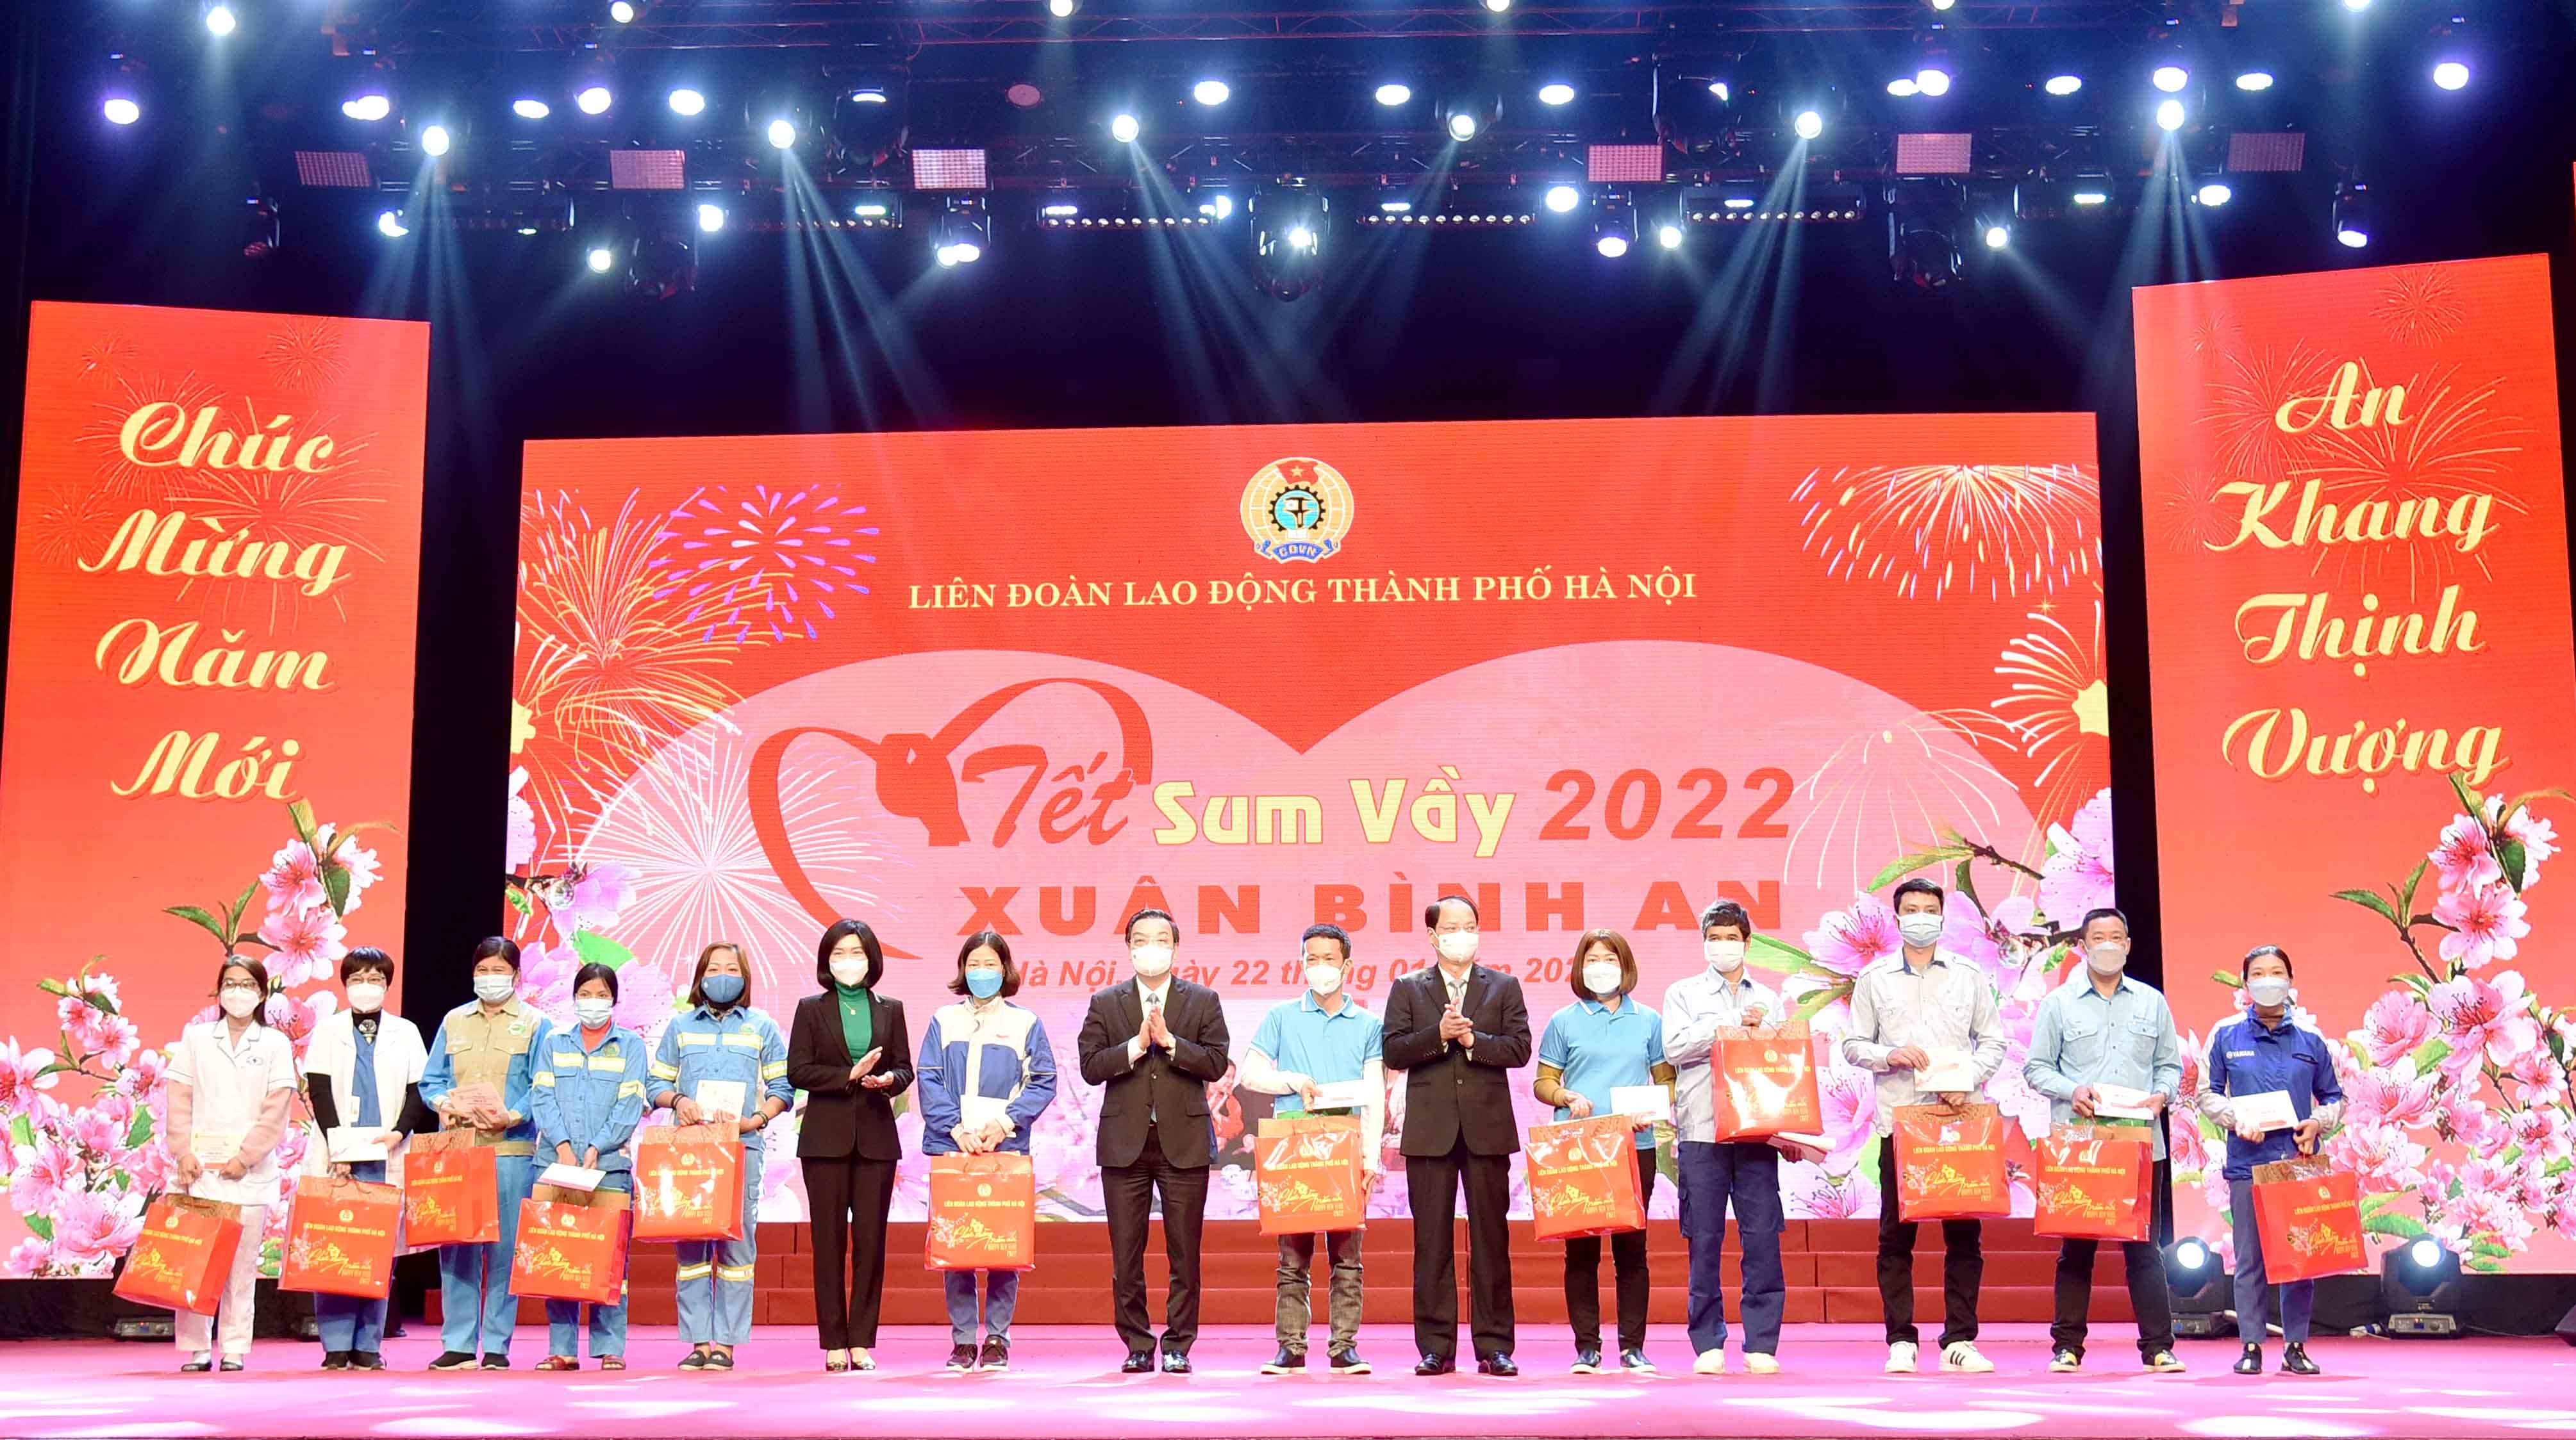 Trực tuyến chương trình "Tết sum vầy - Xuân bình an" năm 2022 trong công nhân, viên chức, lao động Thủ đô